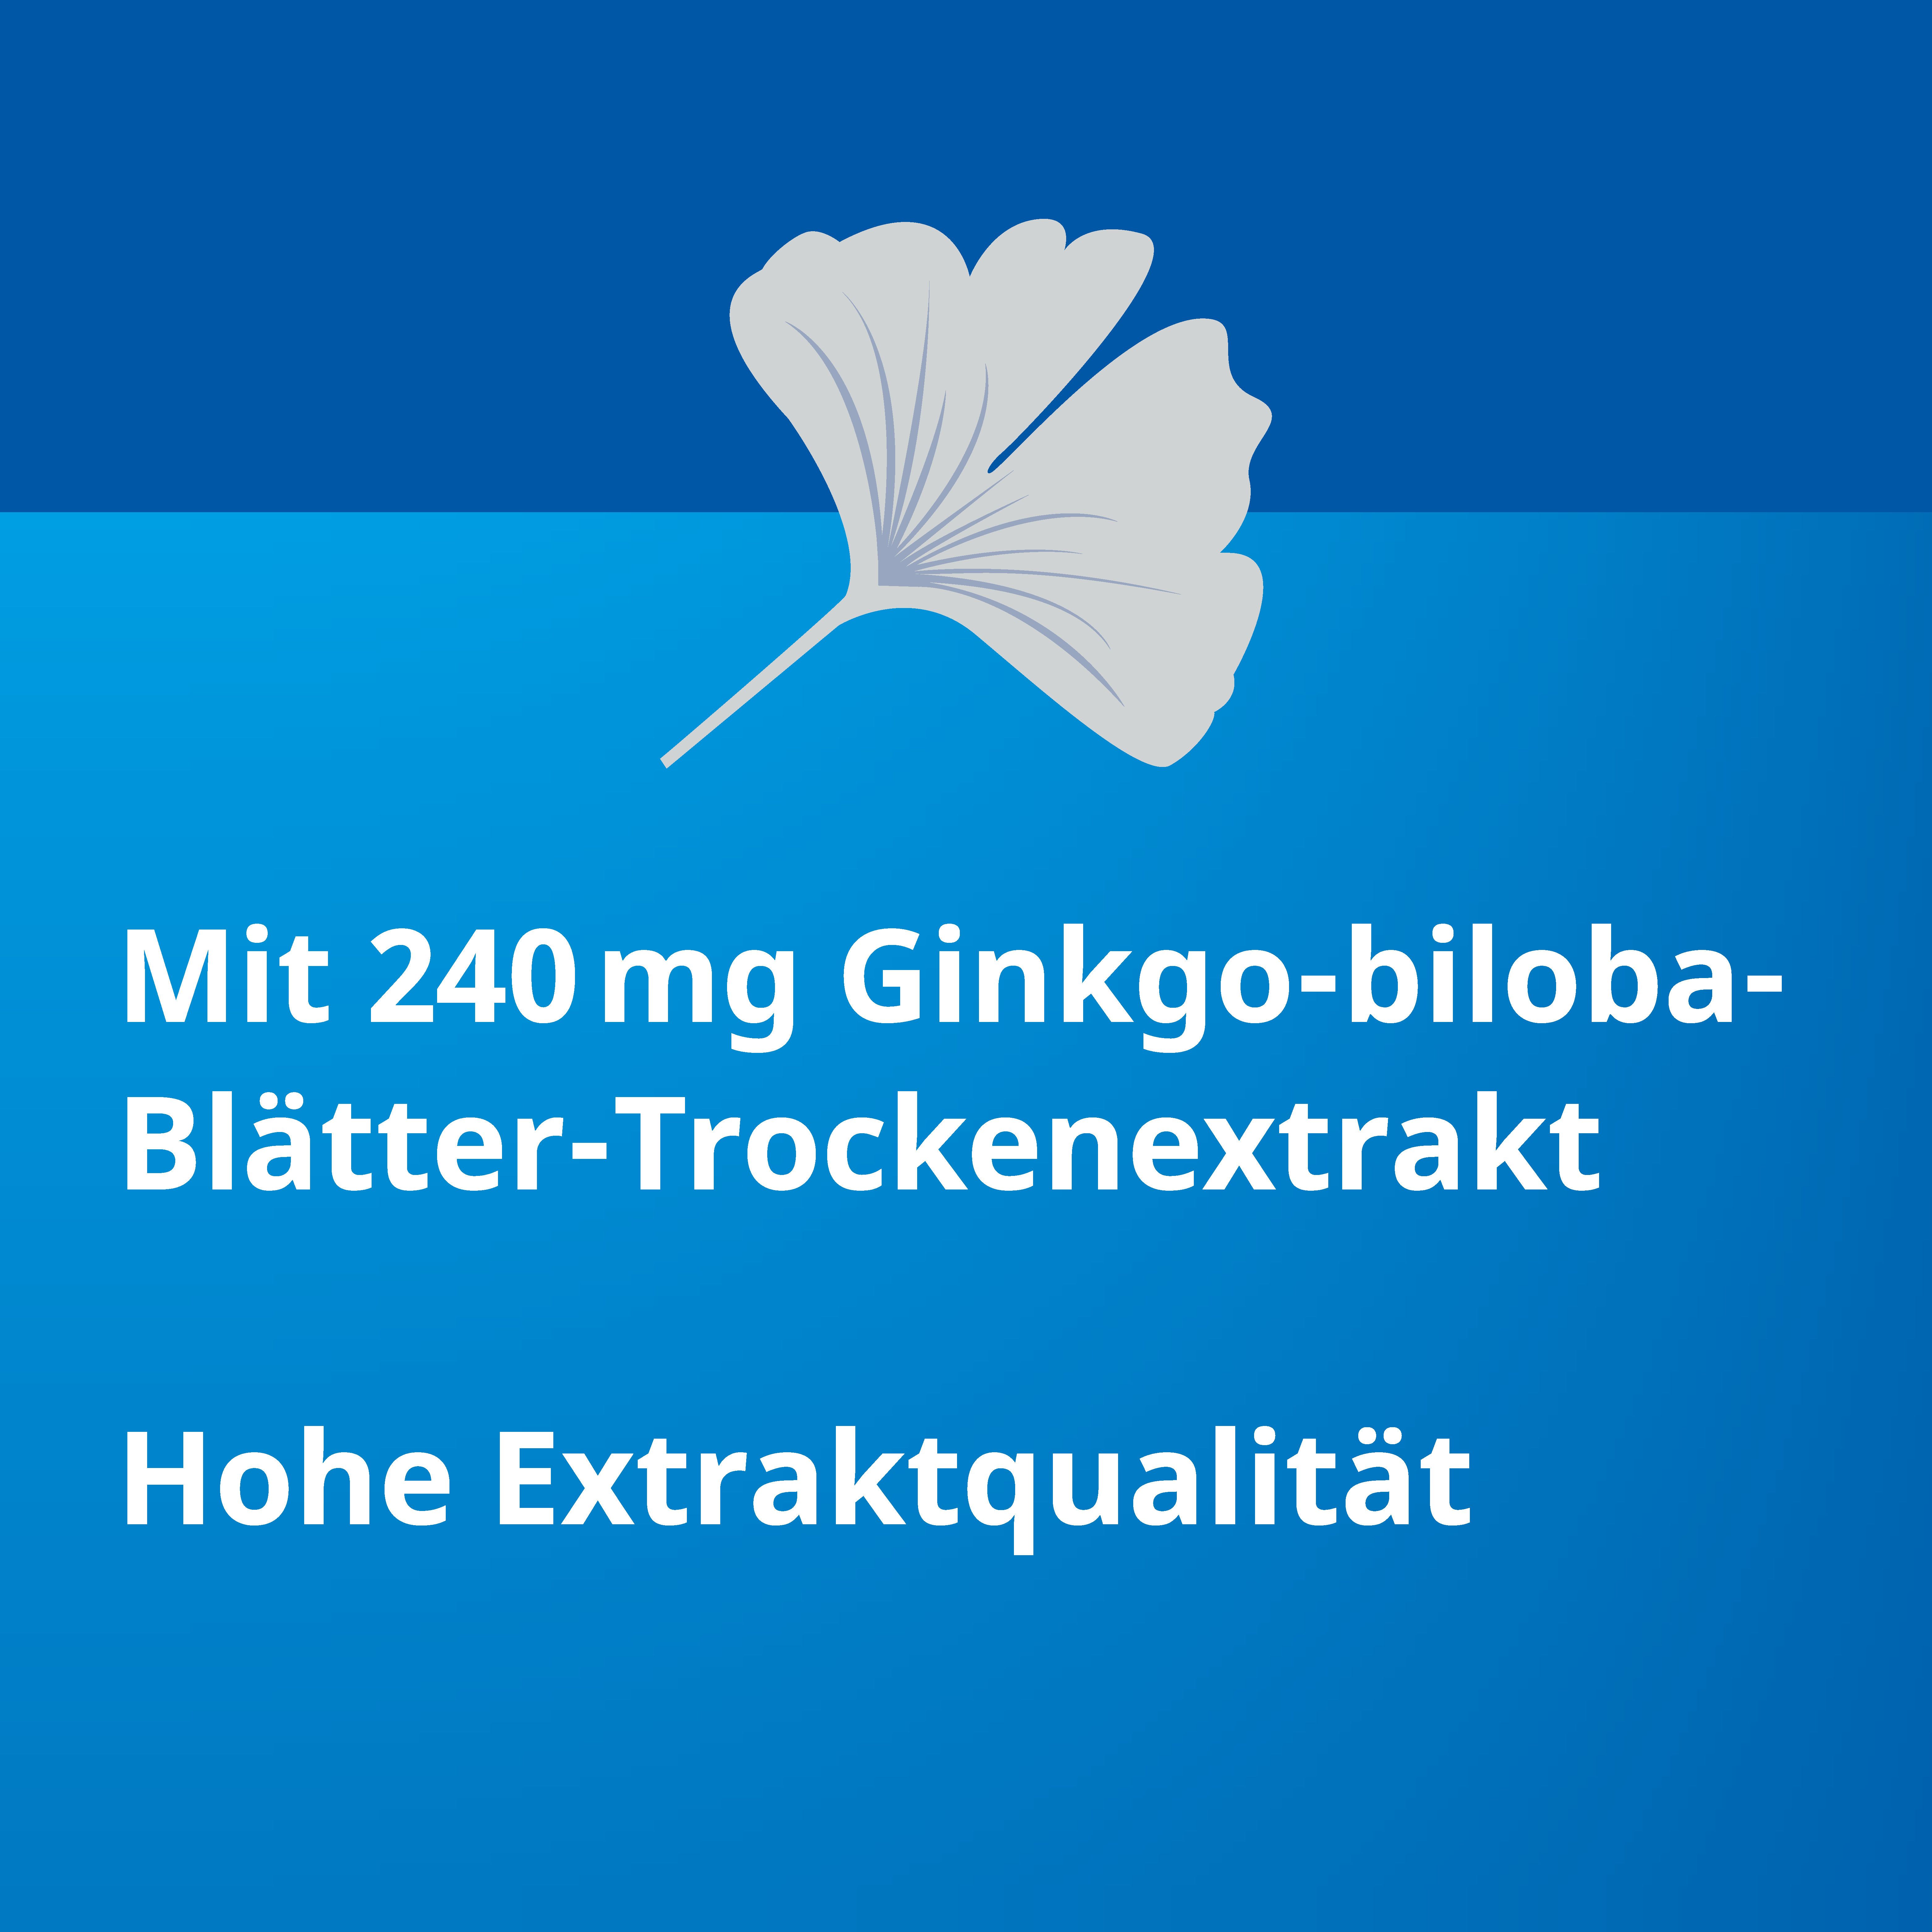 Ginkgo Biloba STADA® 240 mg bei Gedächtnis- und Konzentrationsstörungen